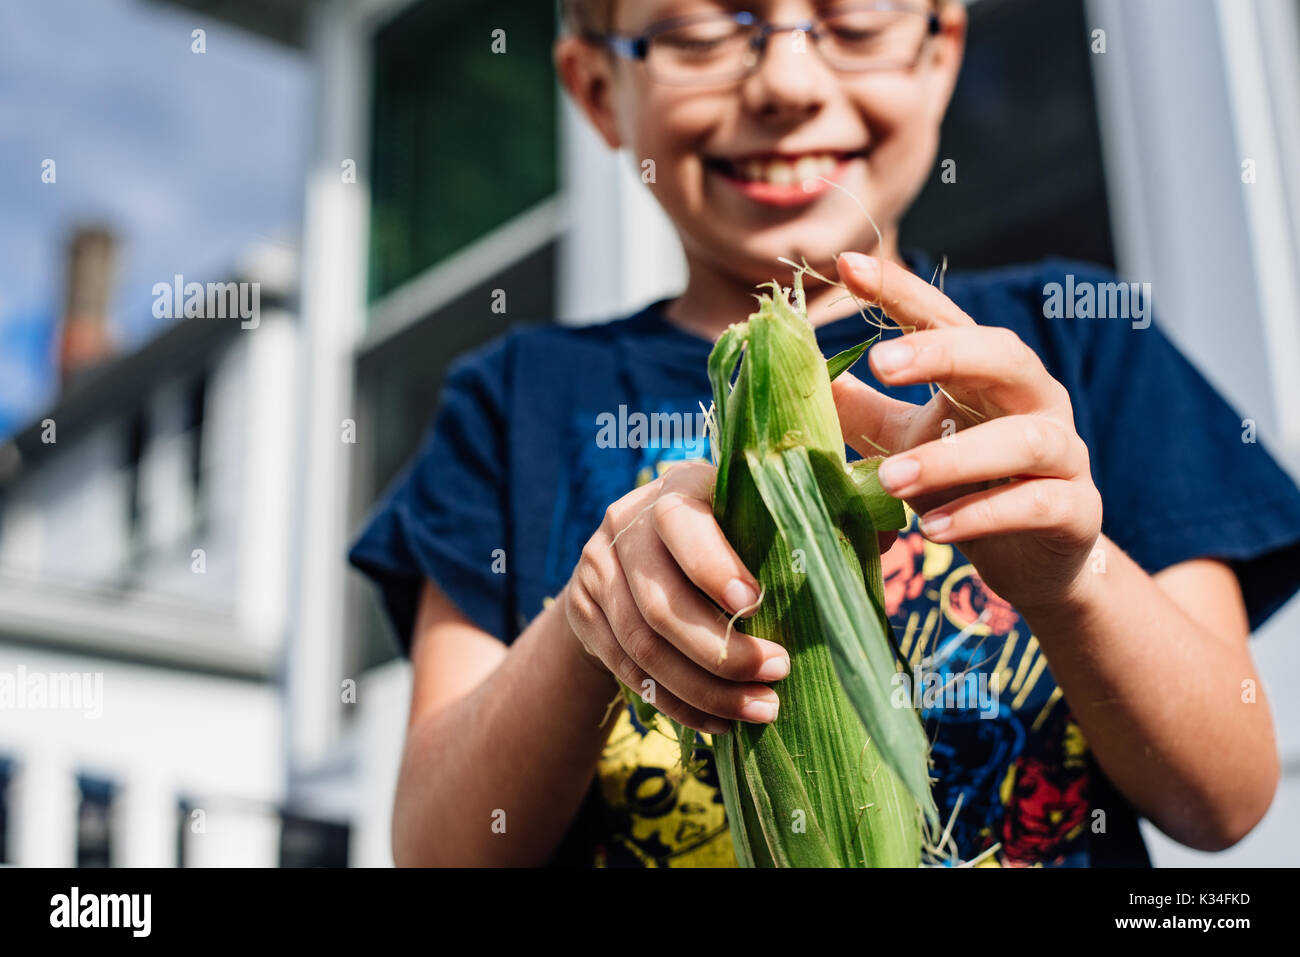 A young boy shucks corn. Stock Photo